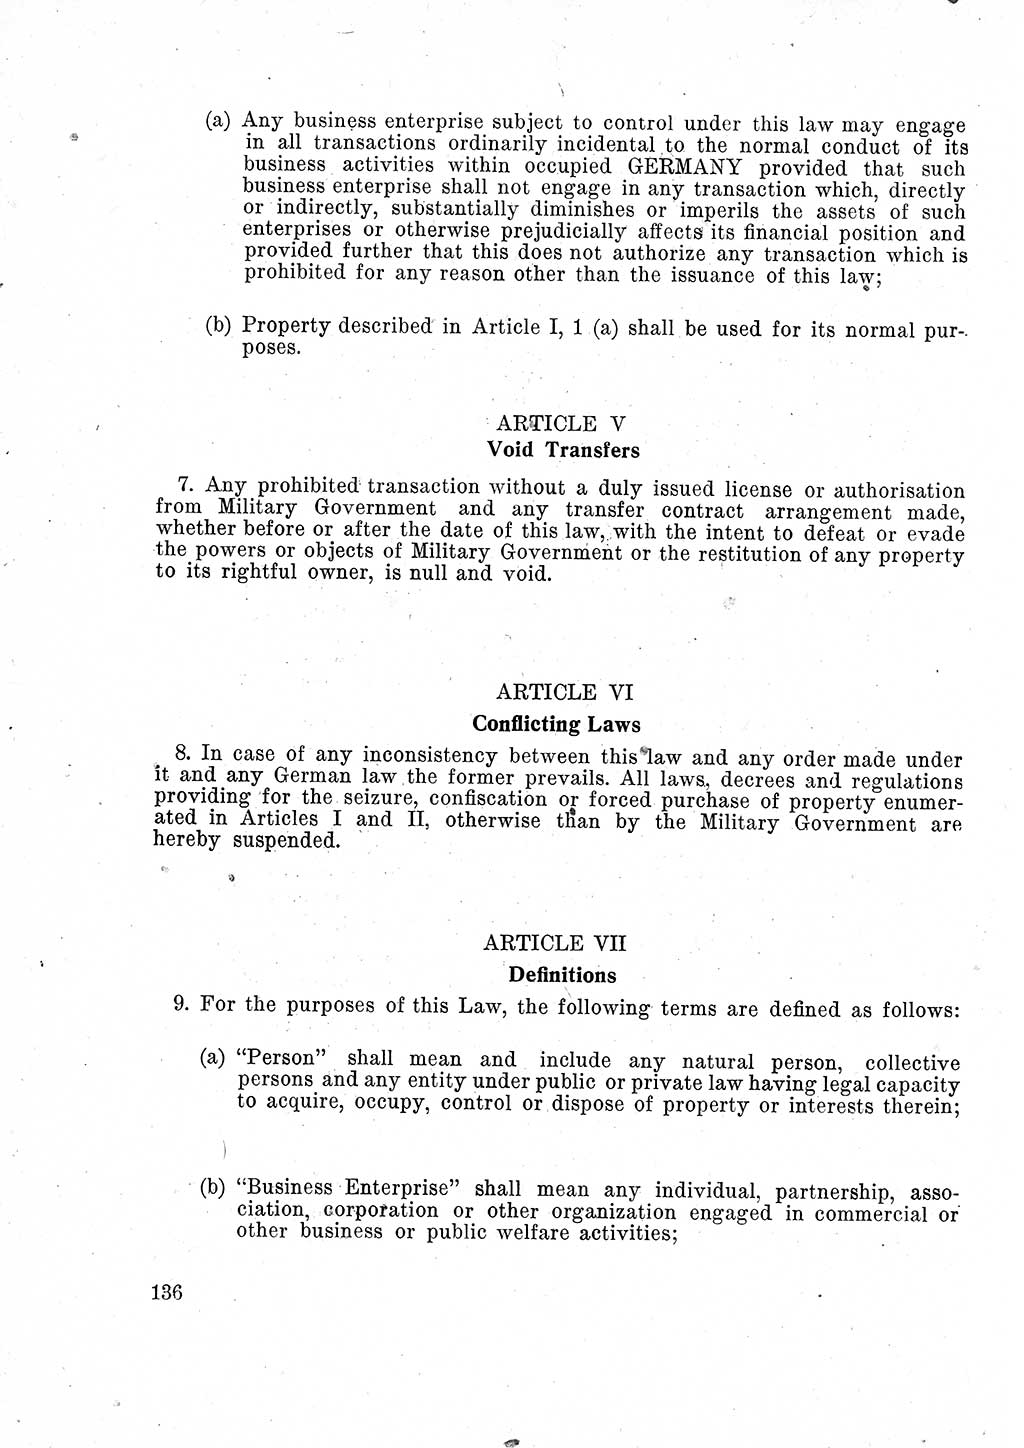 Das Recht der Besatzungsmacht (Deutschland), Proklamationen, Deklerationen, Verordnungen, Gesetze und Bekanntmachungen 1947, Seite 136 (R. Bes. Dtl. 1947, S. 136)